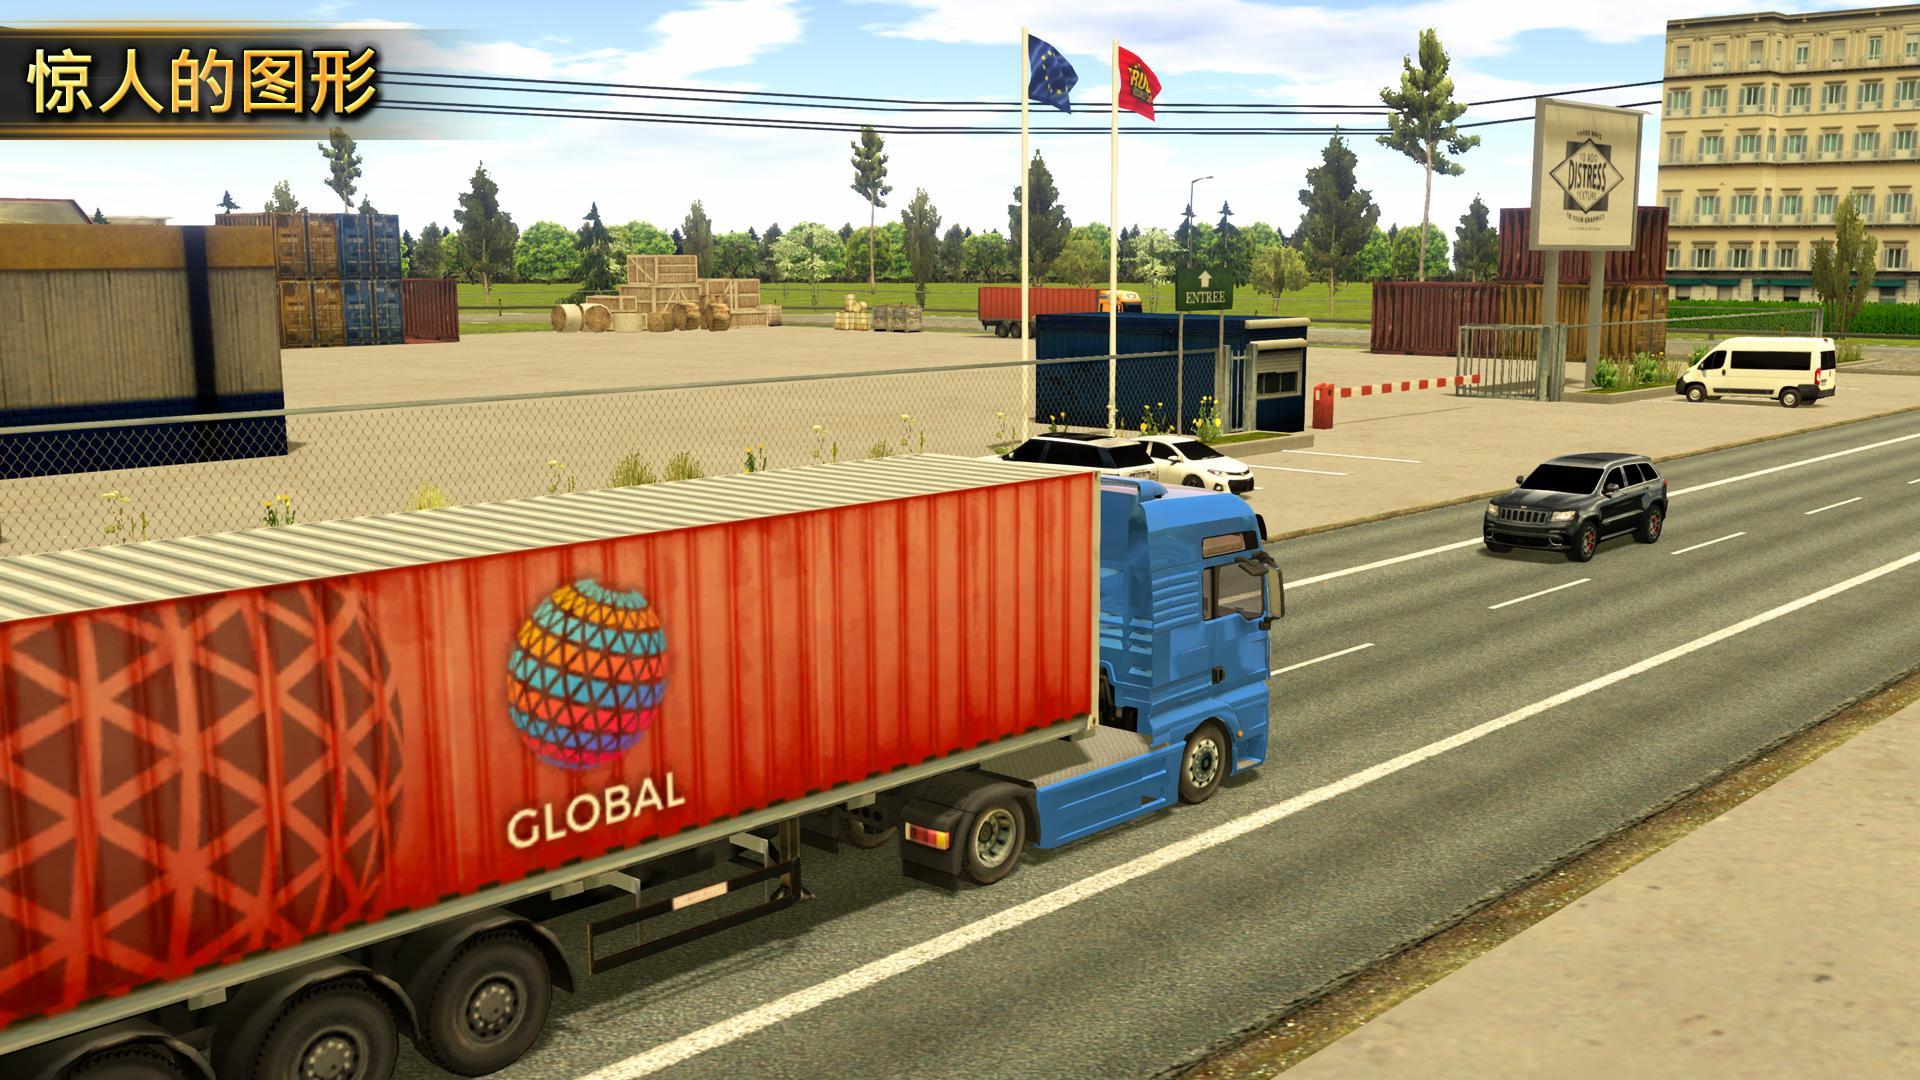 truck simulator 2018 for mac